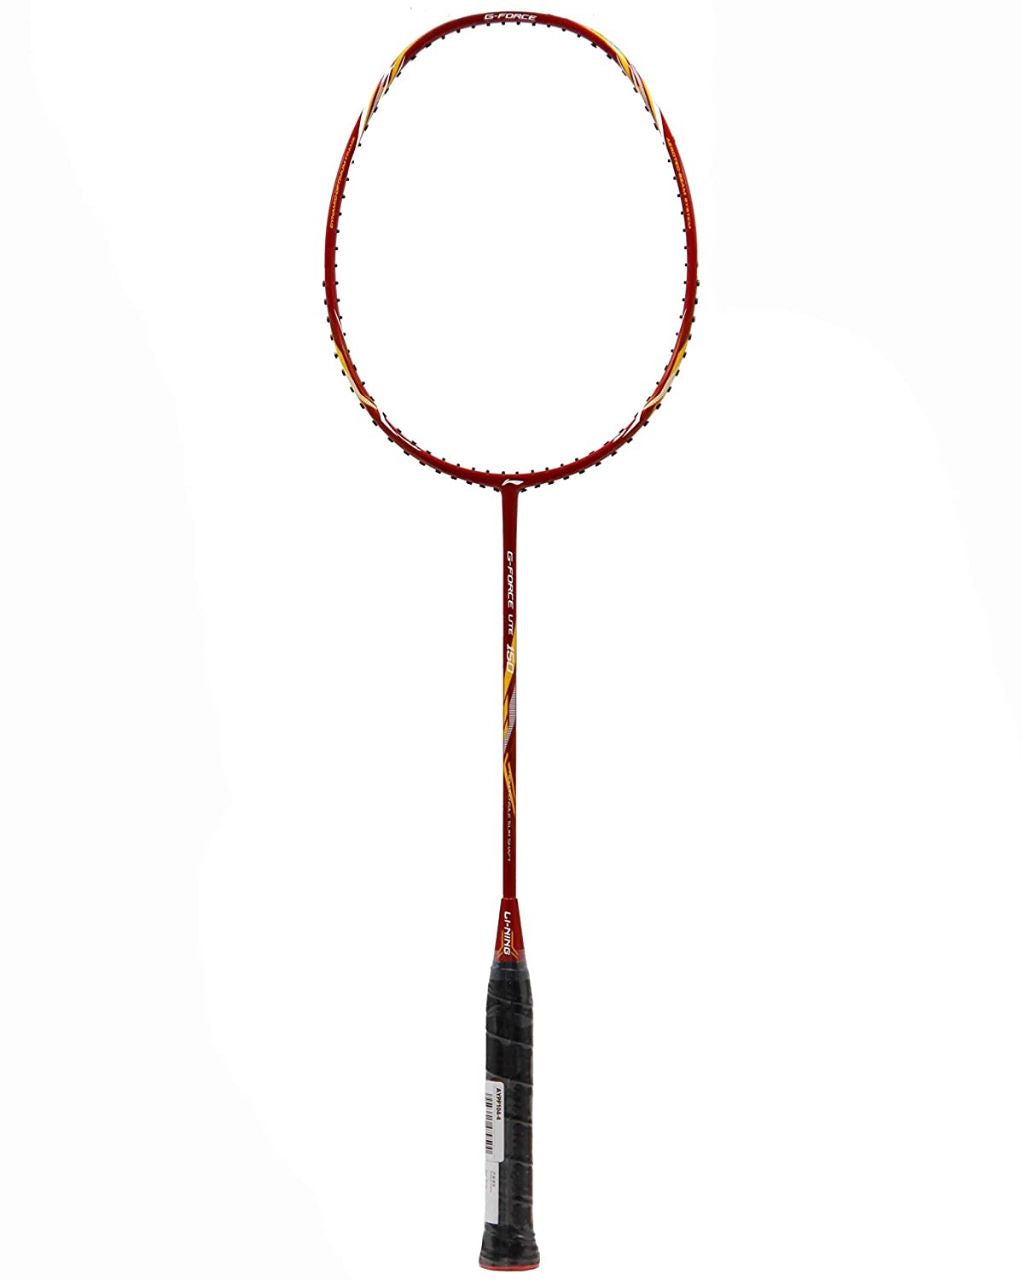 Li-Ning G-Force Lite 150 Badminton Racket